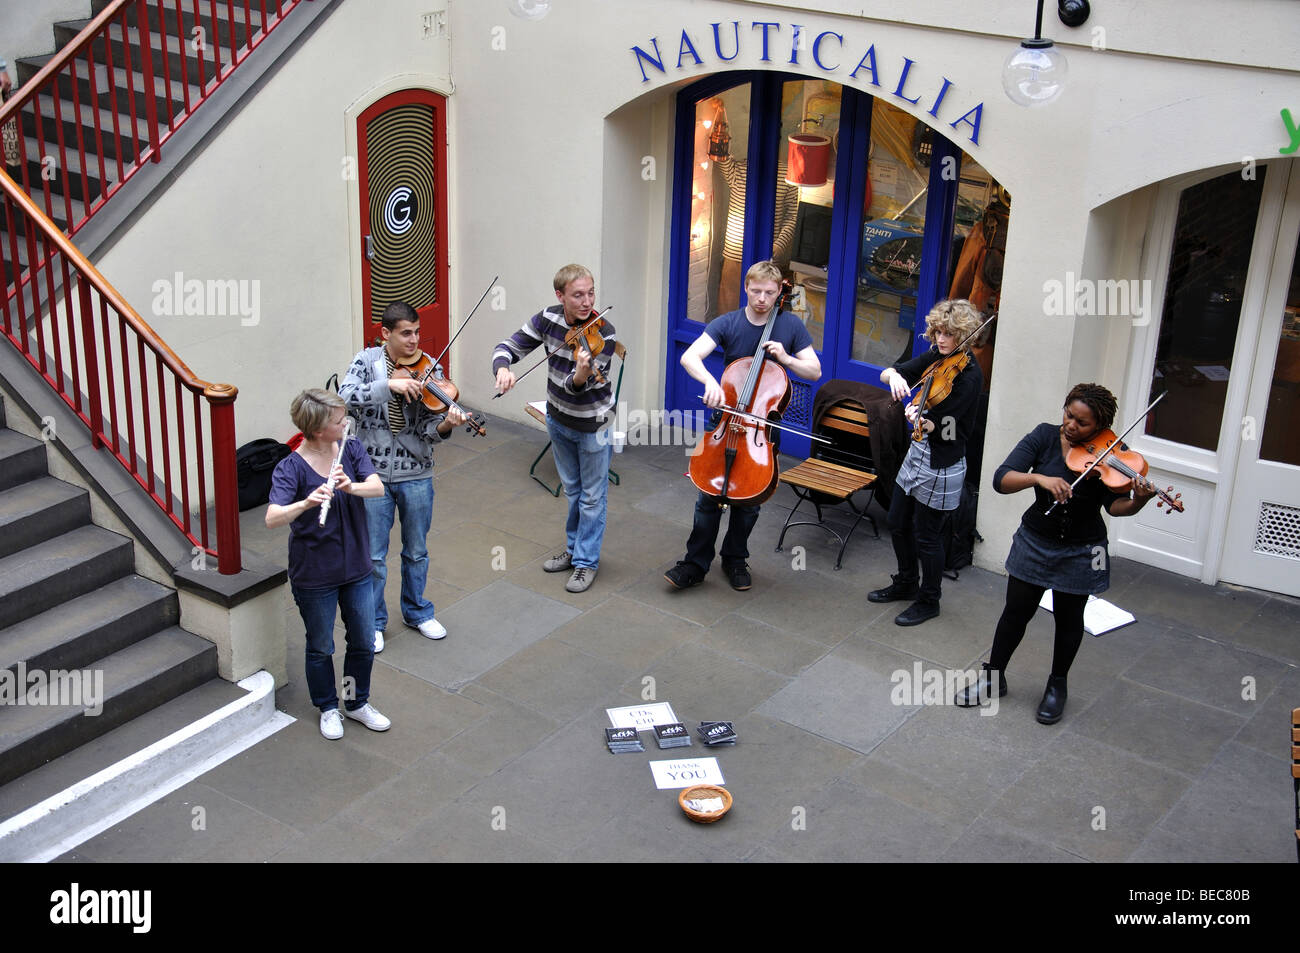 Gruppo classica esecuzione, mercato di Covent Garden, Covent Garden, la City of Westminster, Londra, Inghilterra, Regno Unito Foto Stock